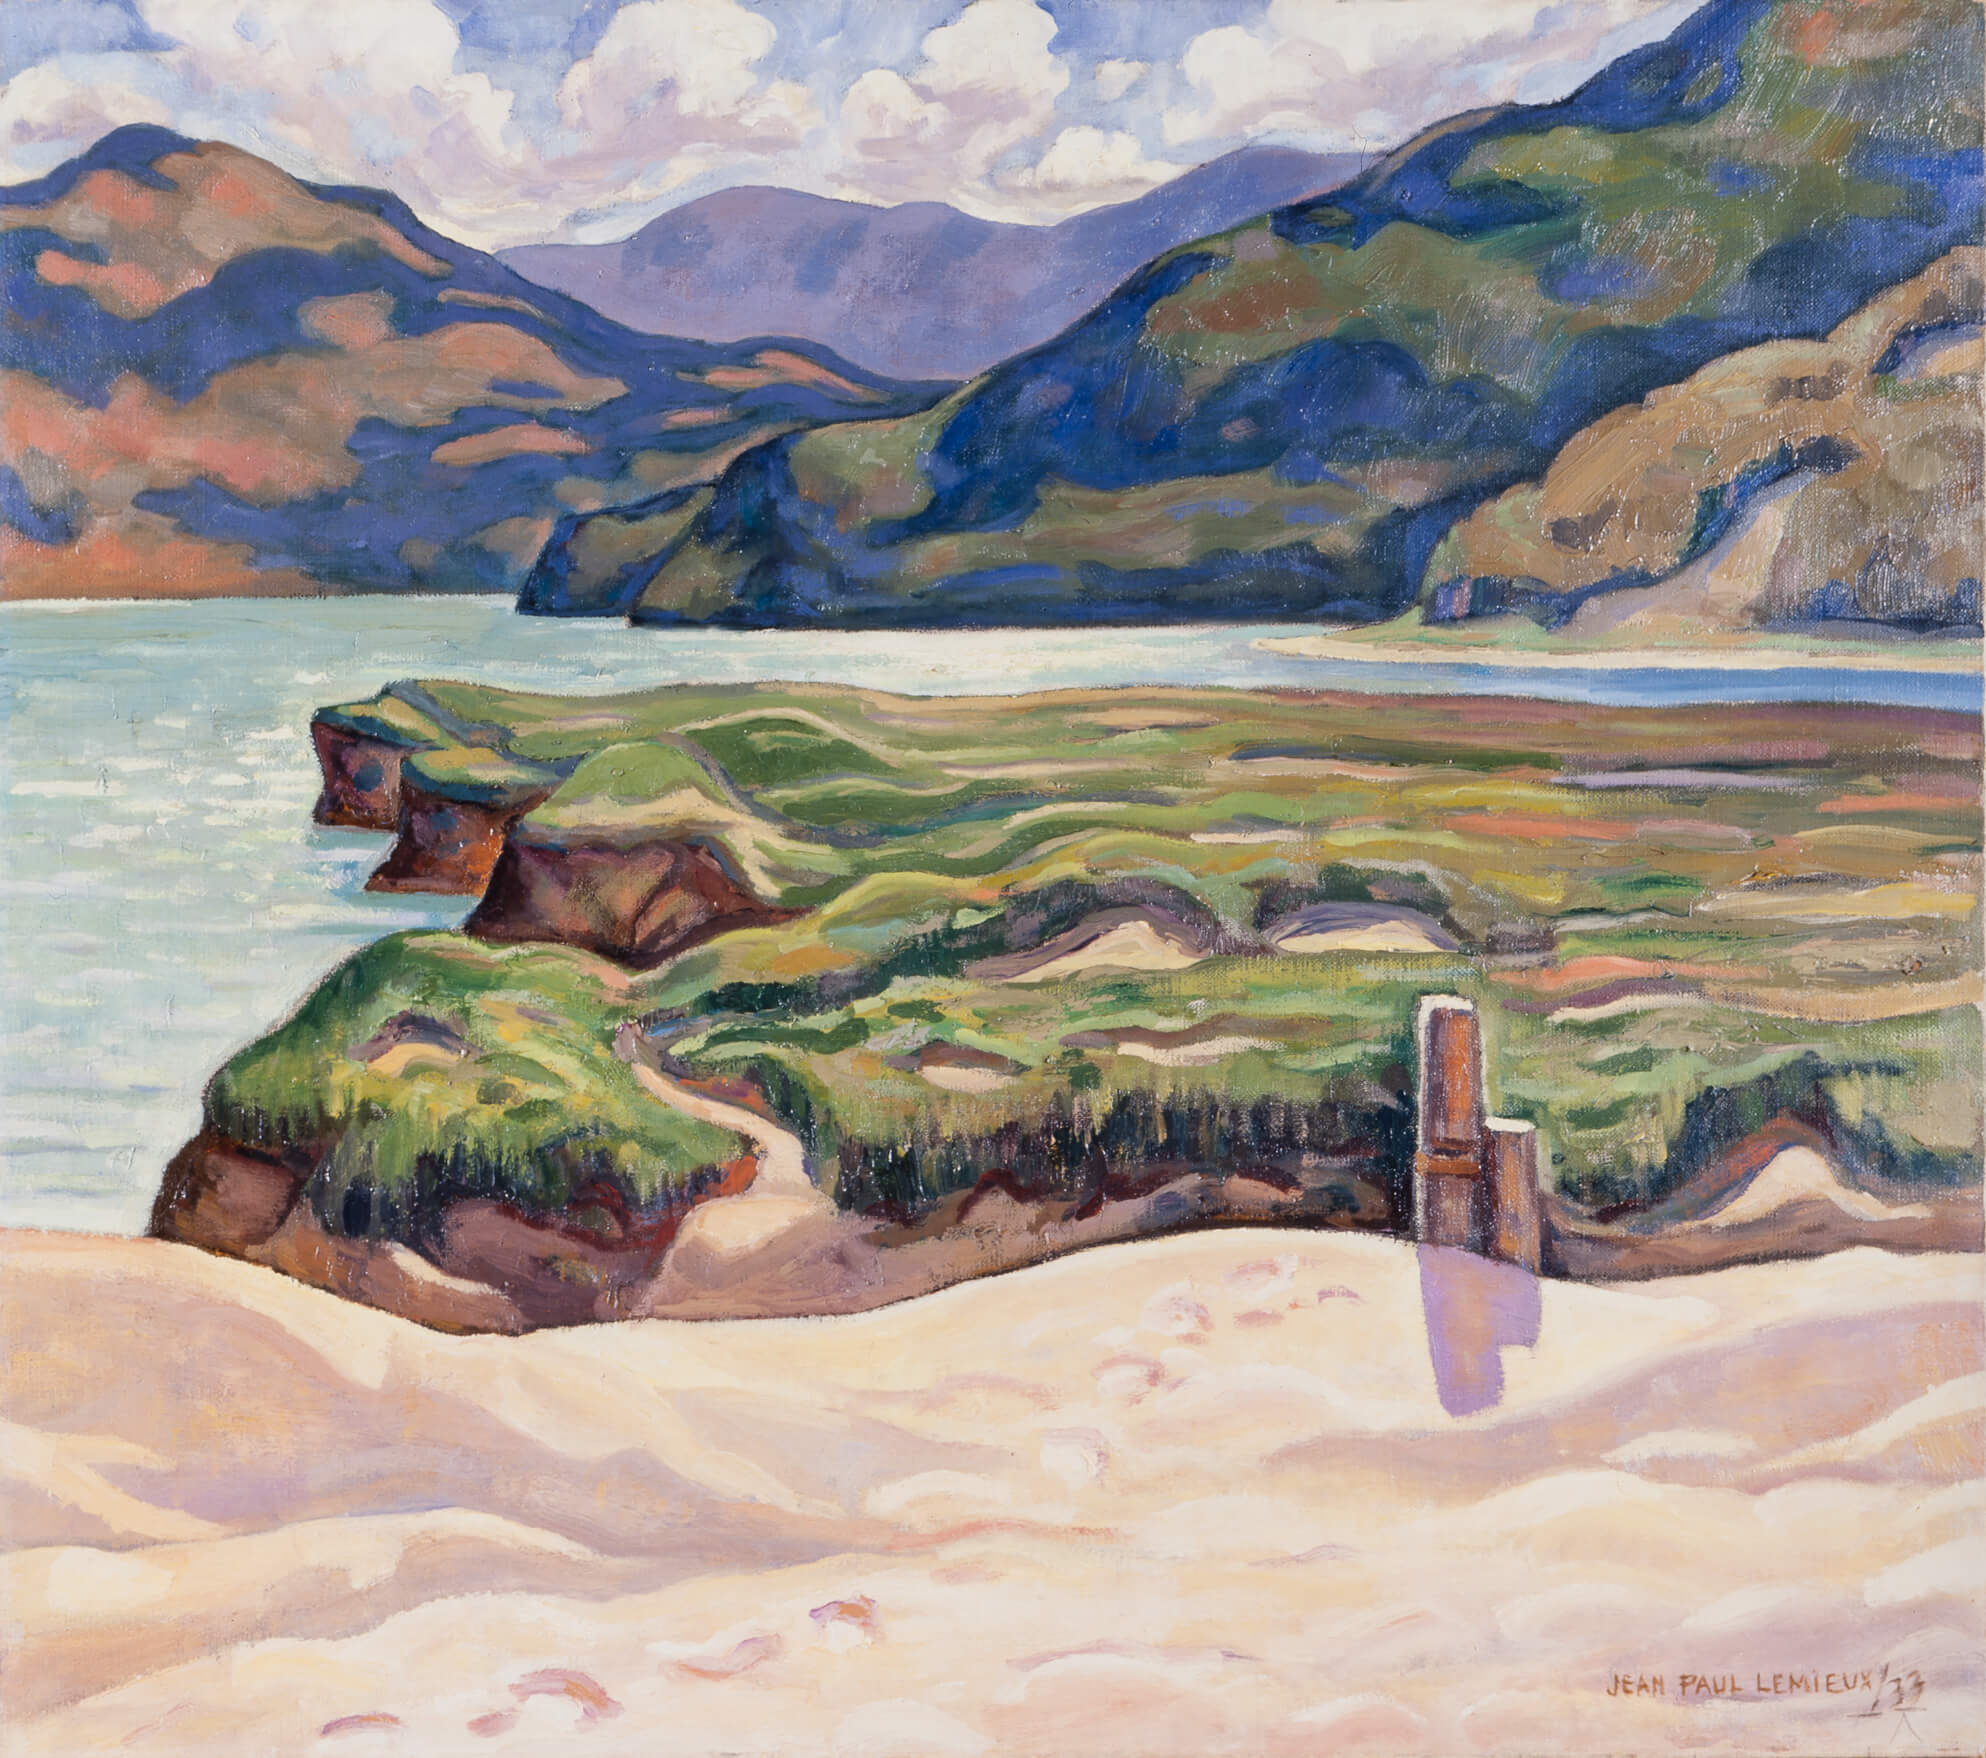 Jean Paul Lemieux, Afternoon Sunlight, 1933